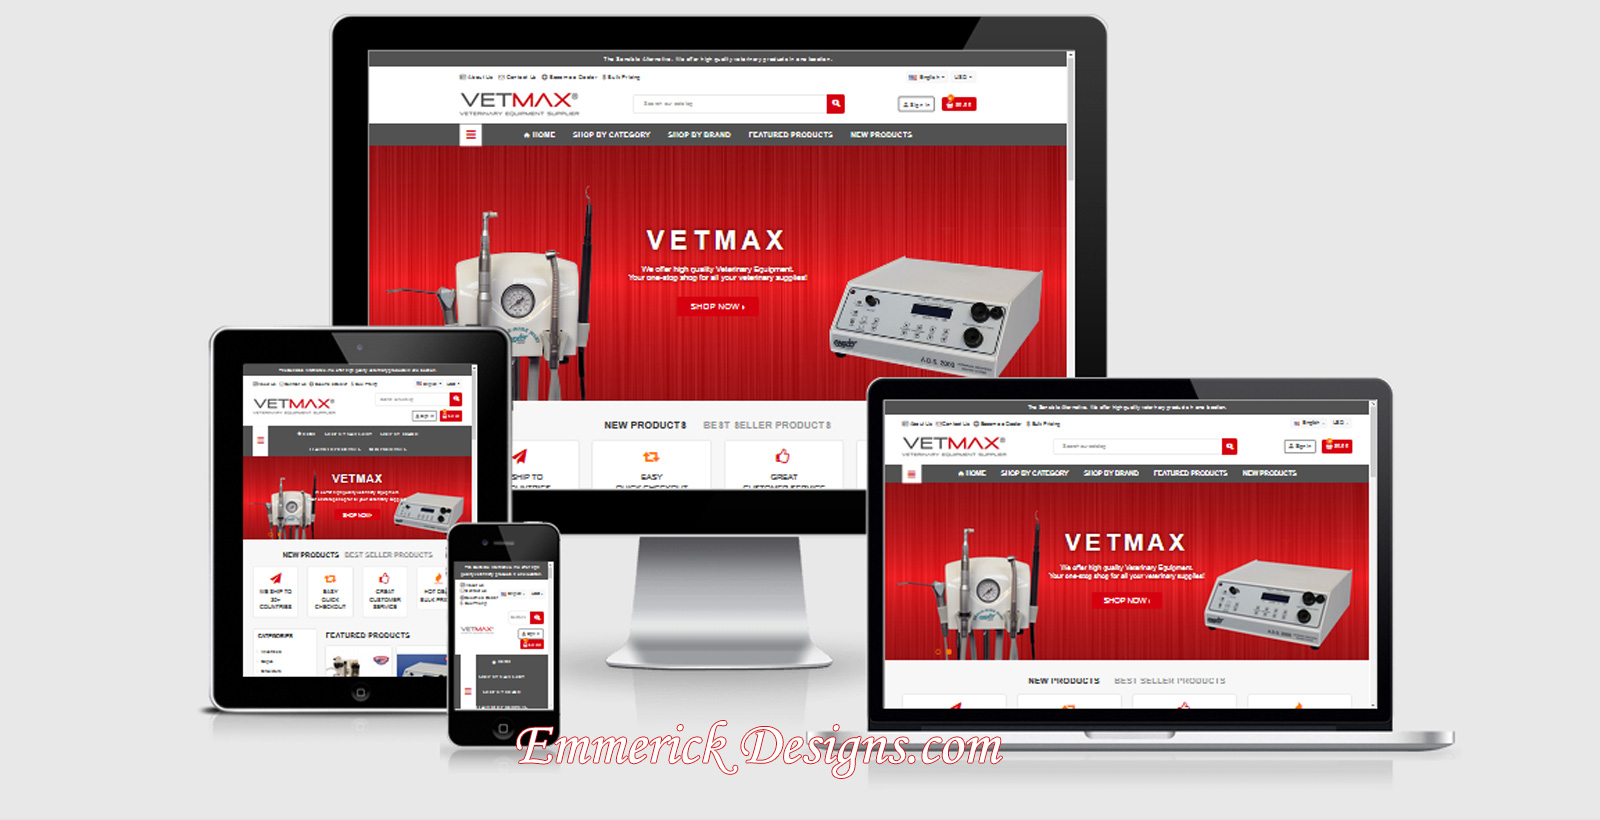 Web Design Cincinnati - VETMAX